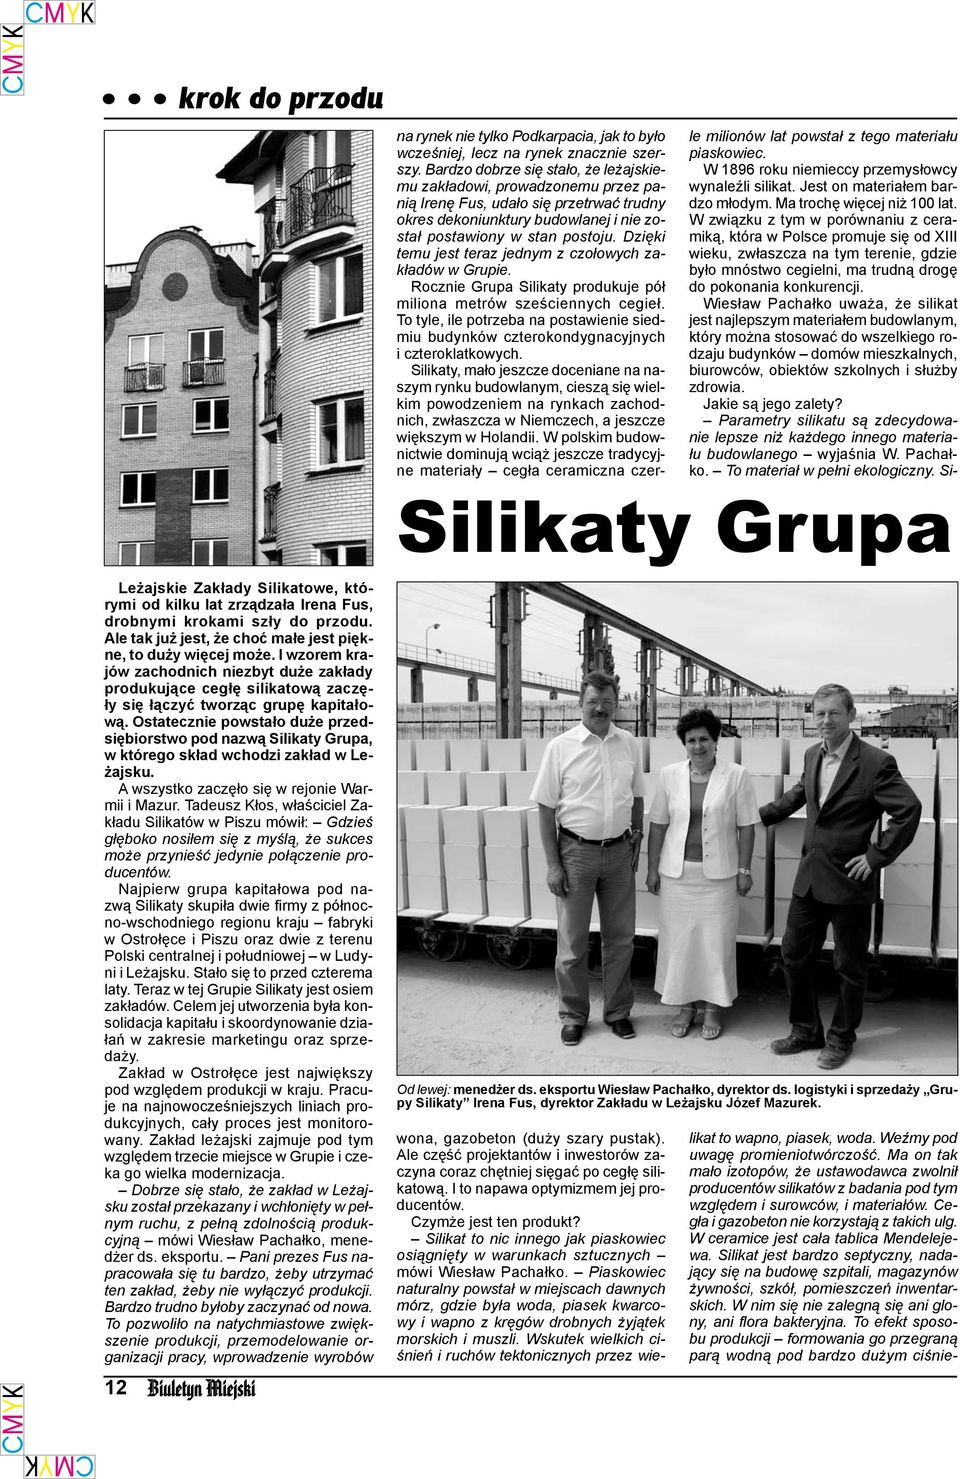 Ostatecznie powstało duże przedsiębiorstwo pod nazwą Silikaty Grupa, w którego skład wchodzi zakład w Leżajsku. A wszystko zaczęło się w rejonie Warmii i Mazur.